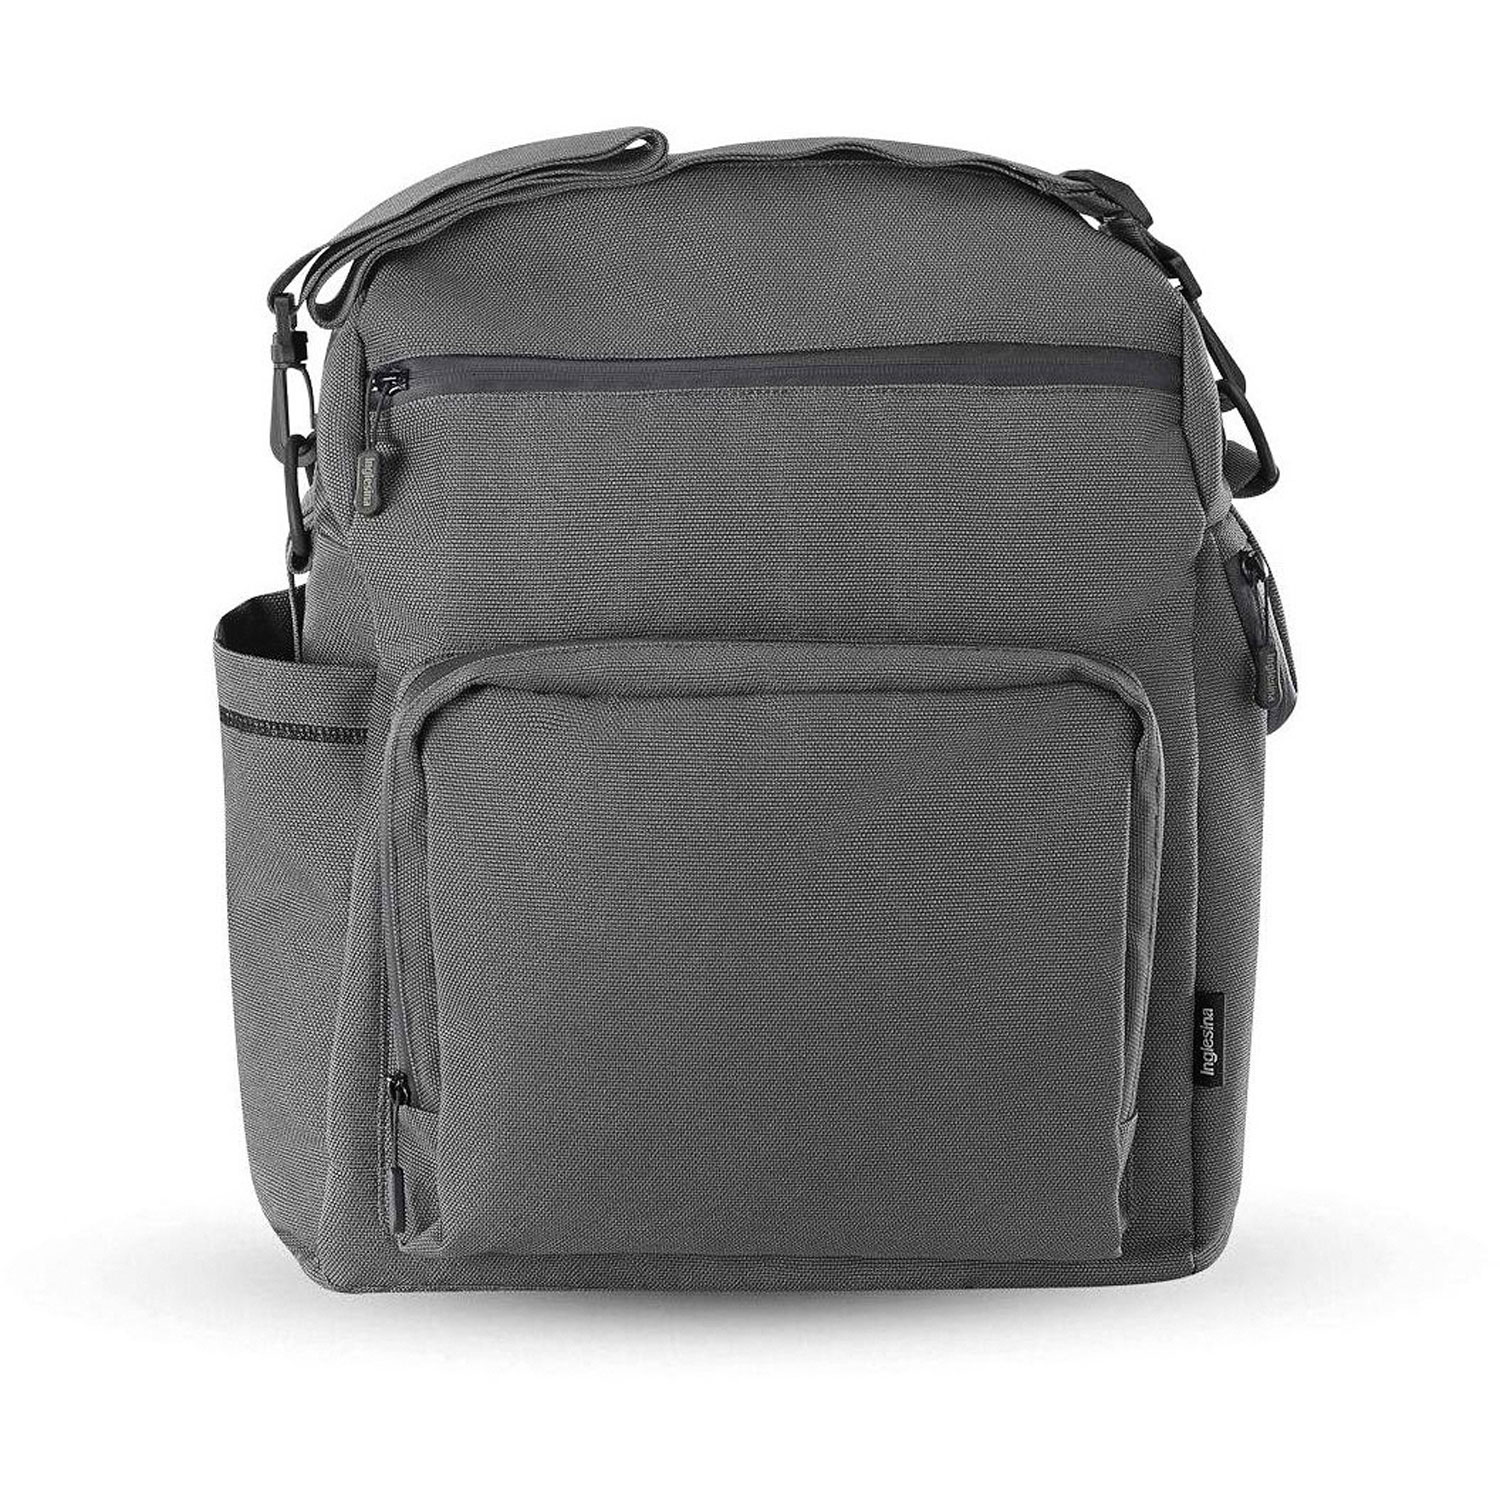 Сумка-рюкзак для коляски ADVENTURE BAG, цвет CHARCOAL GREY (2021) Inglesina сумка рюкзак для коляски adventure bag horizon grey 2021 inglesina